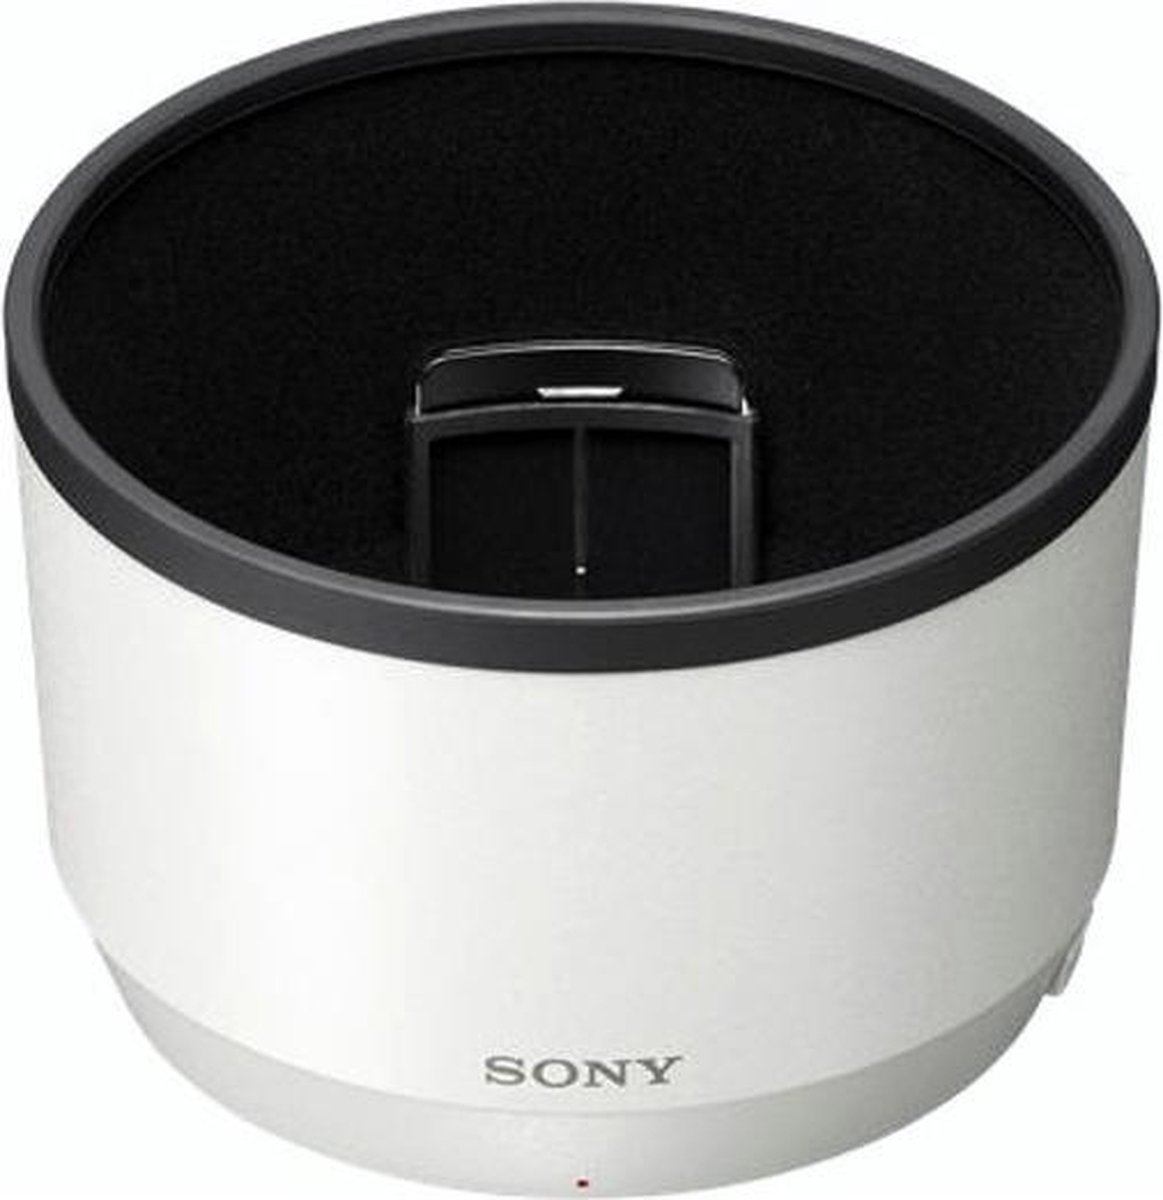 Sony ALC-SH151 Rond Zwart, Wit